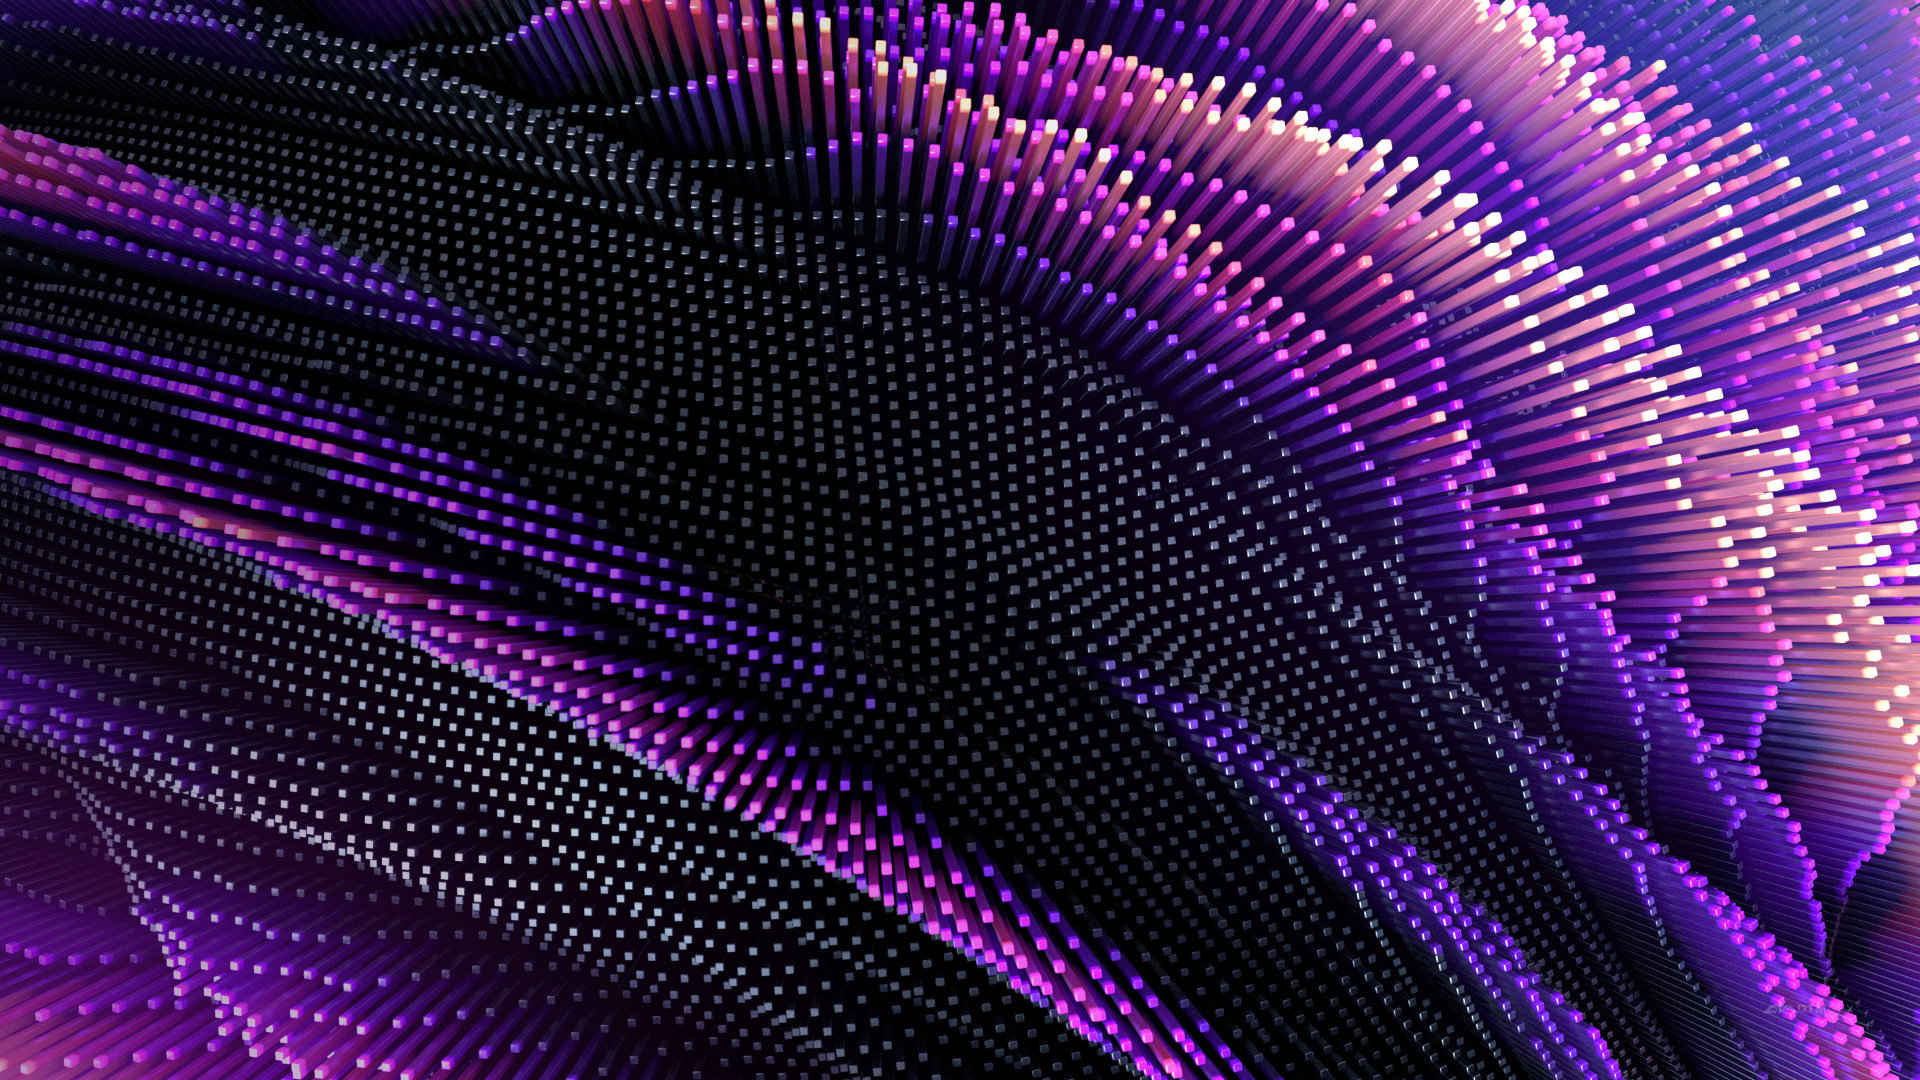 紫色条状精美电脑壁纸 高清